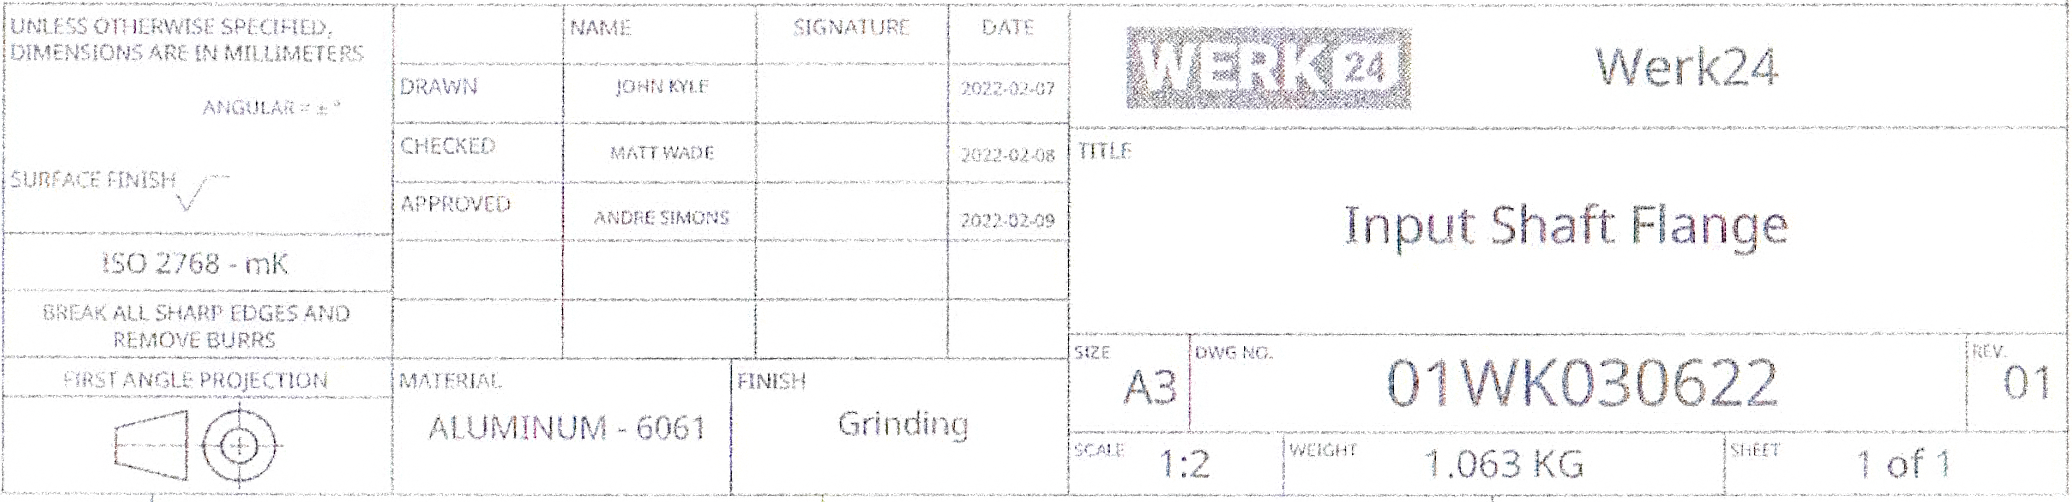 Werk24 extrait des informations de dessins techniques scannés ou de faible qualité